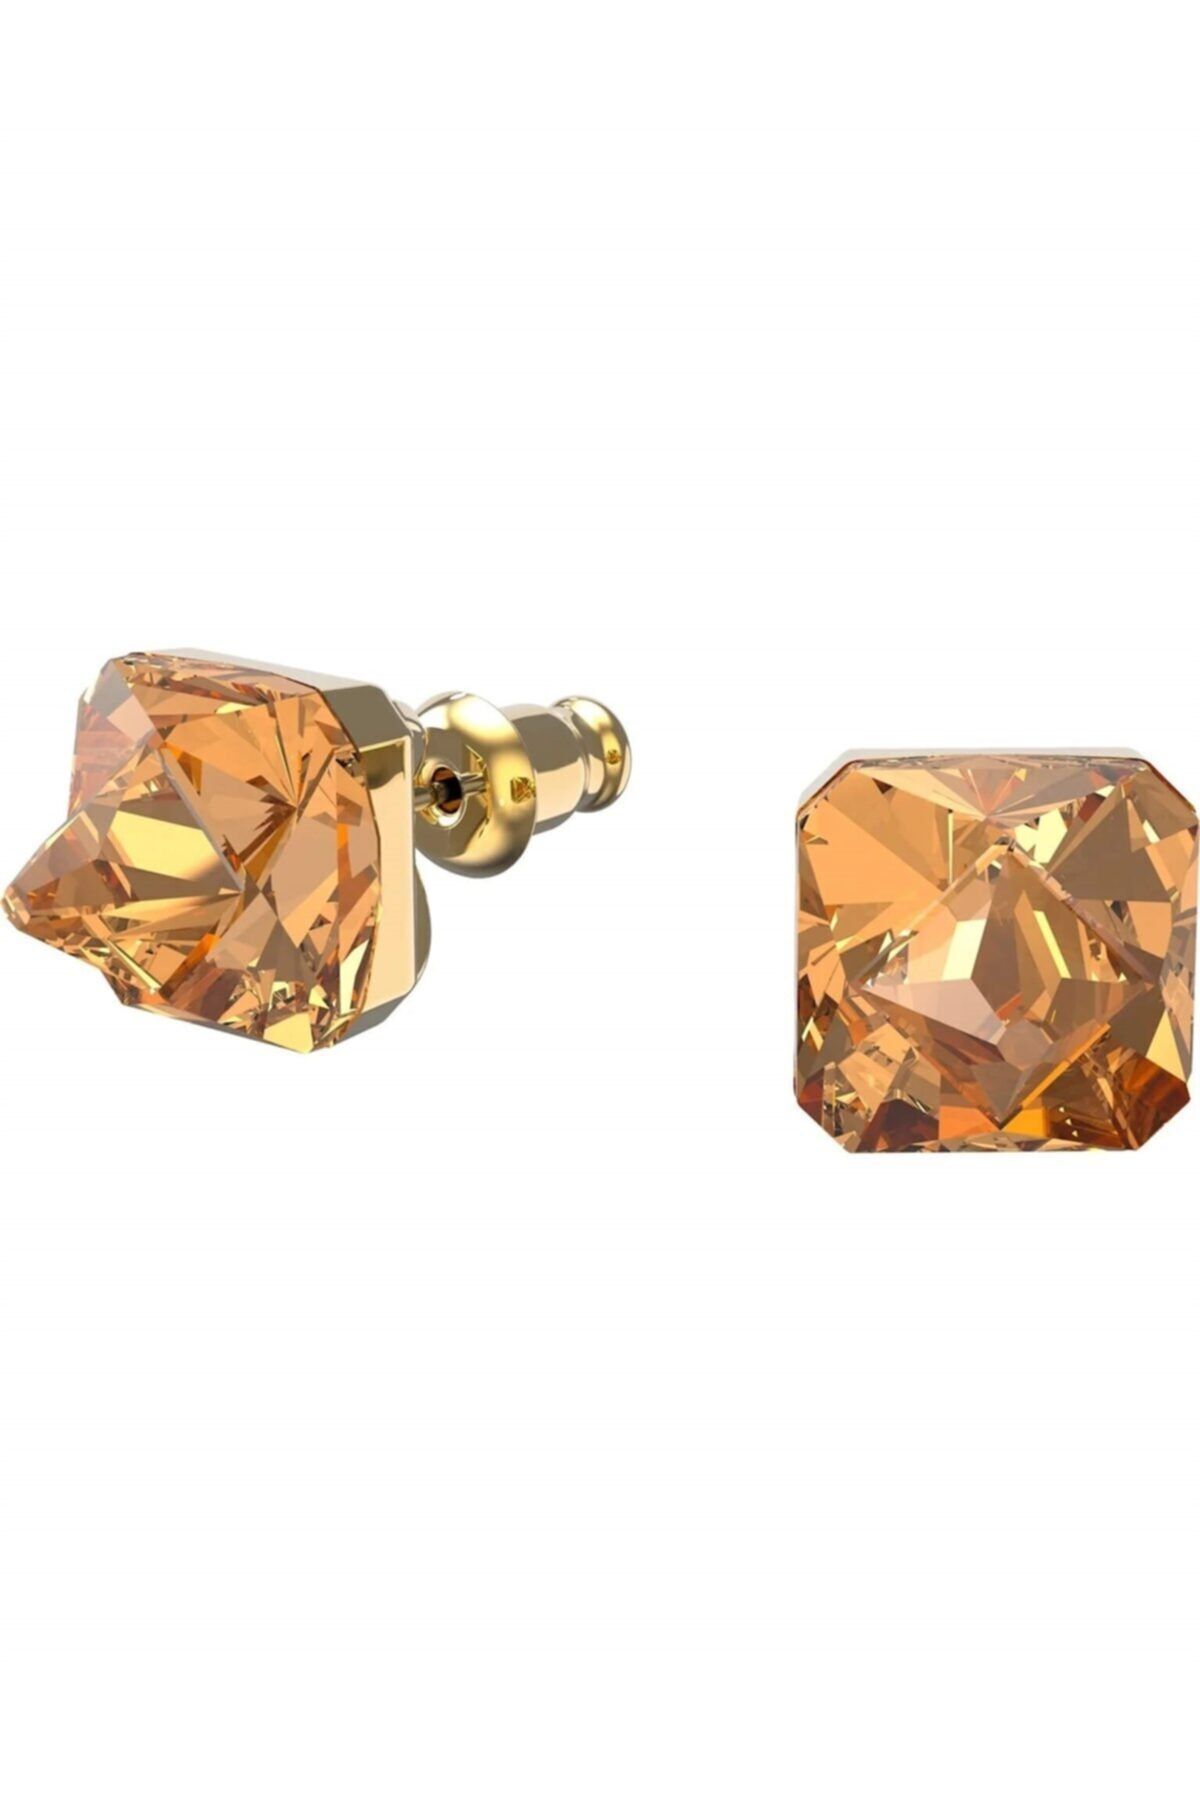 Swarovski Chroma Düğme Küpeler, Piramit Kesim Kristaller, Sarı, Altın Rengi Kaplama, 5613680